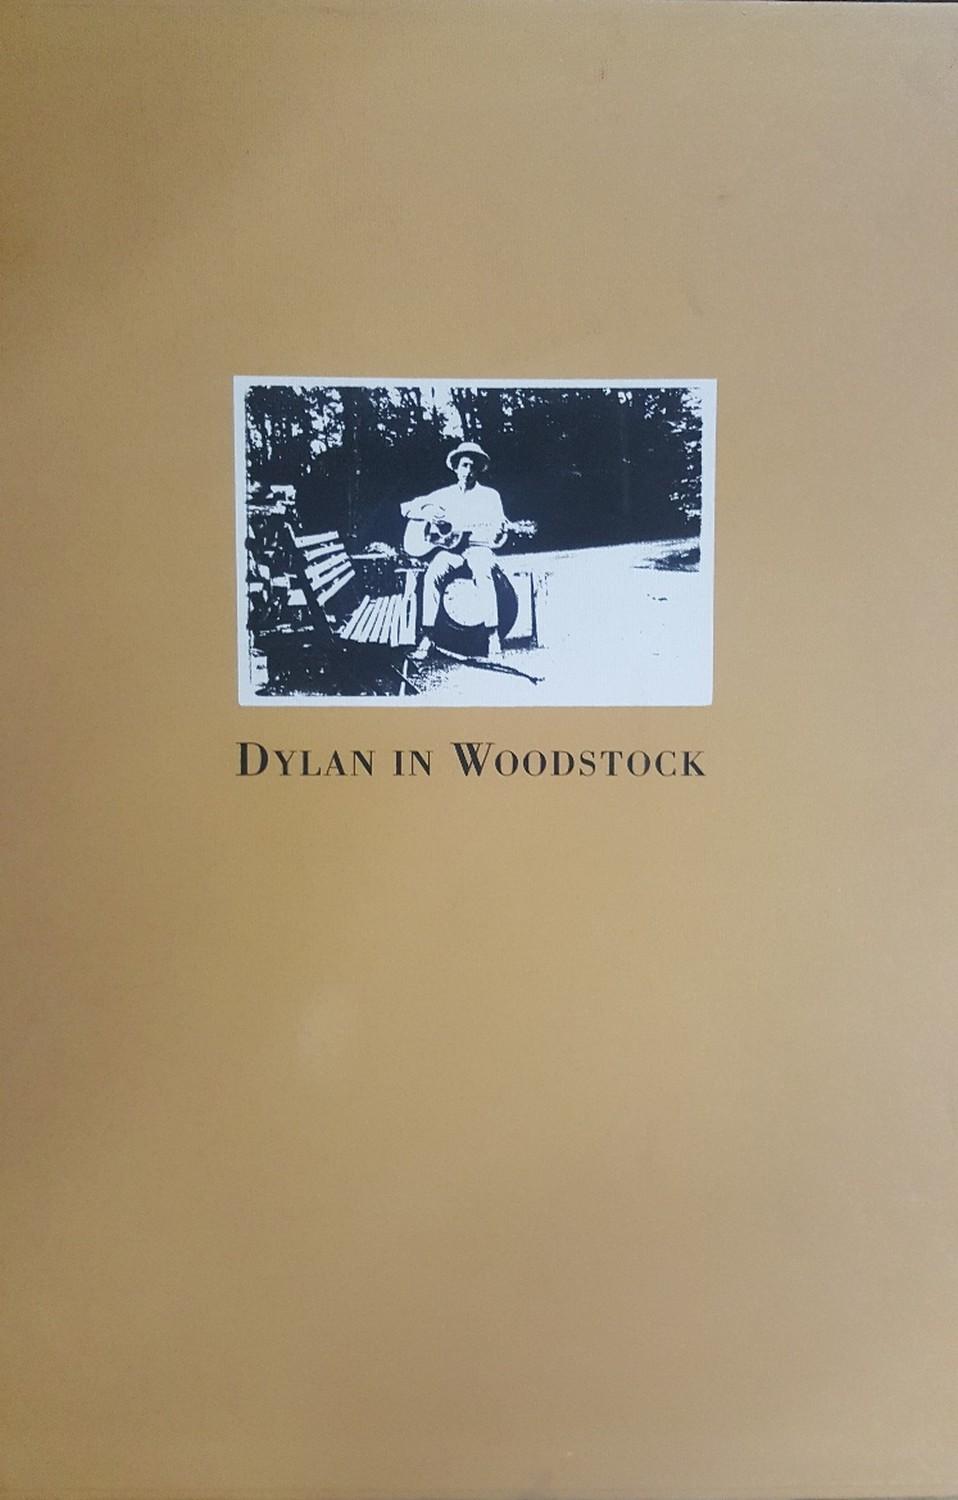 Dylan in Woodstock (Elliott Landy)